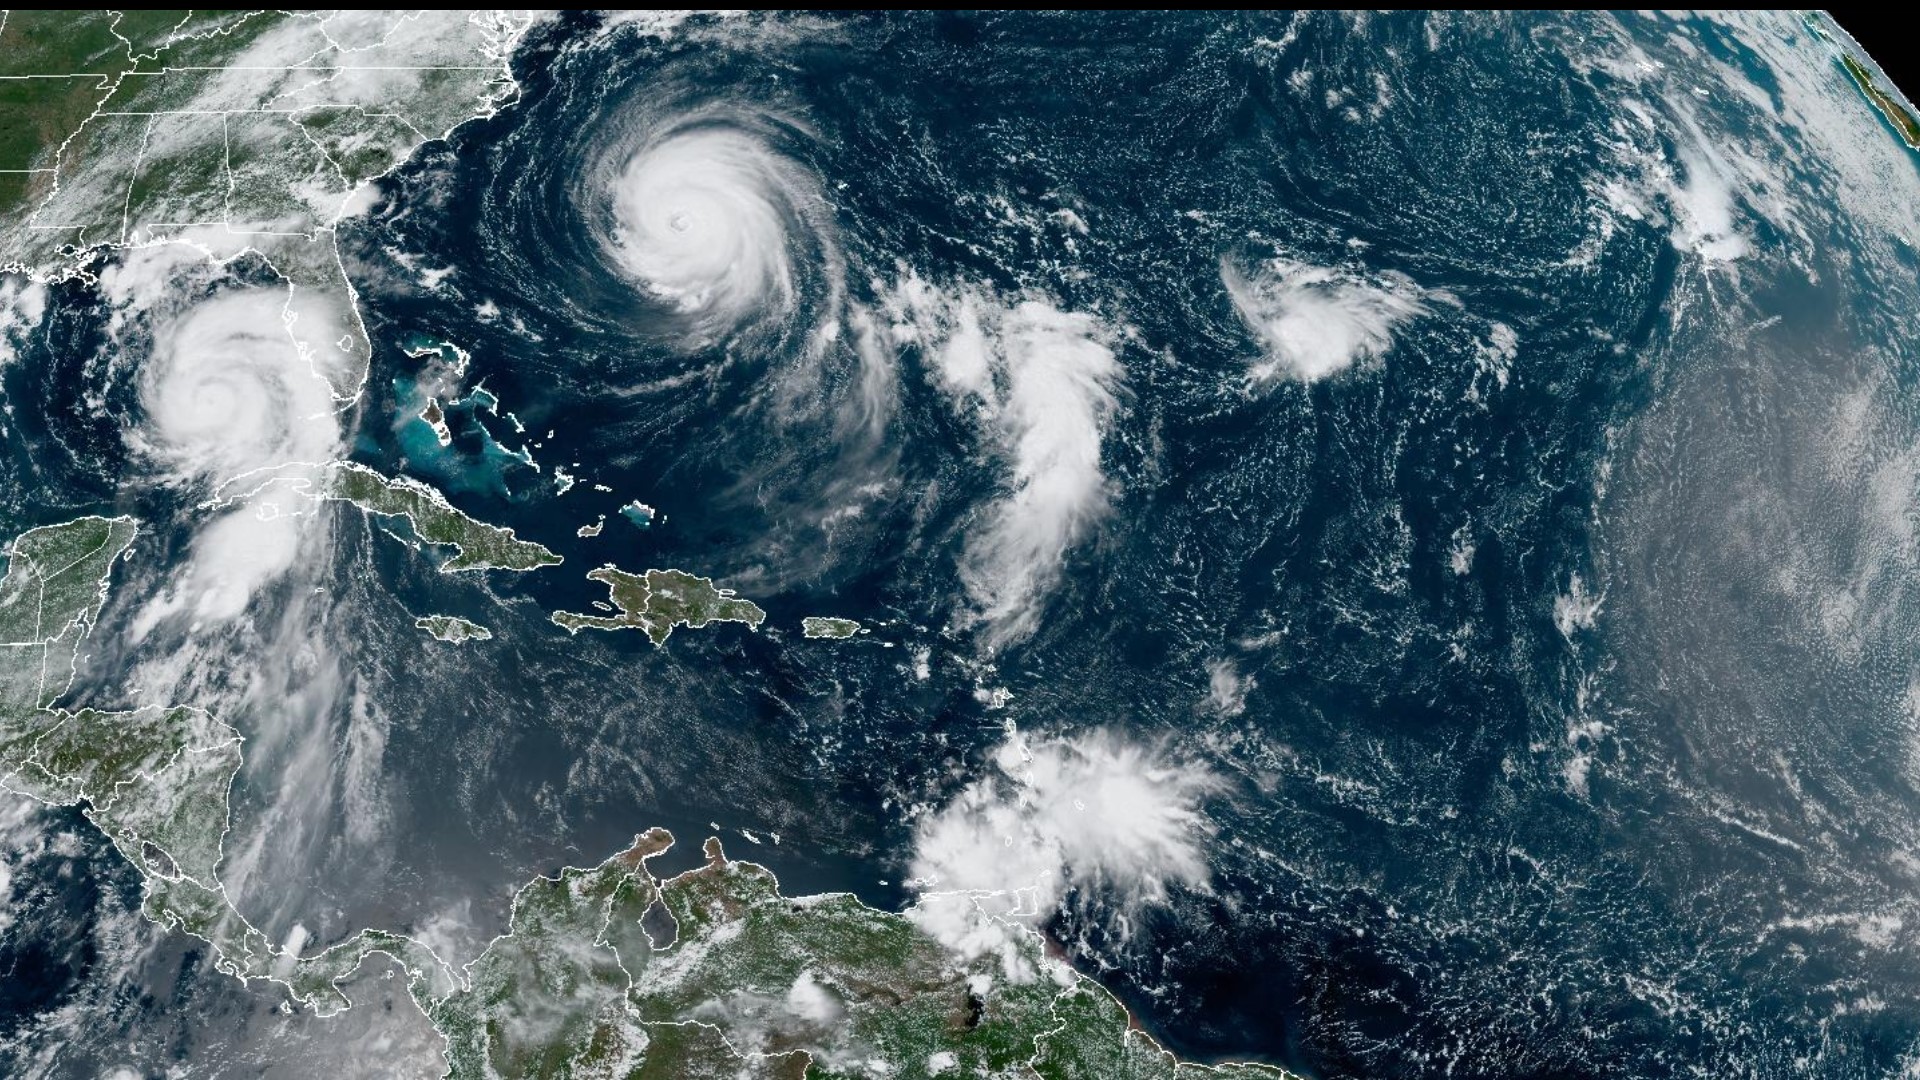 Idalia Satellite images show hurricane brewing along Florida